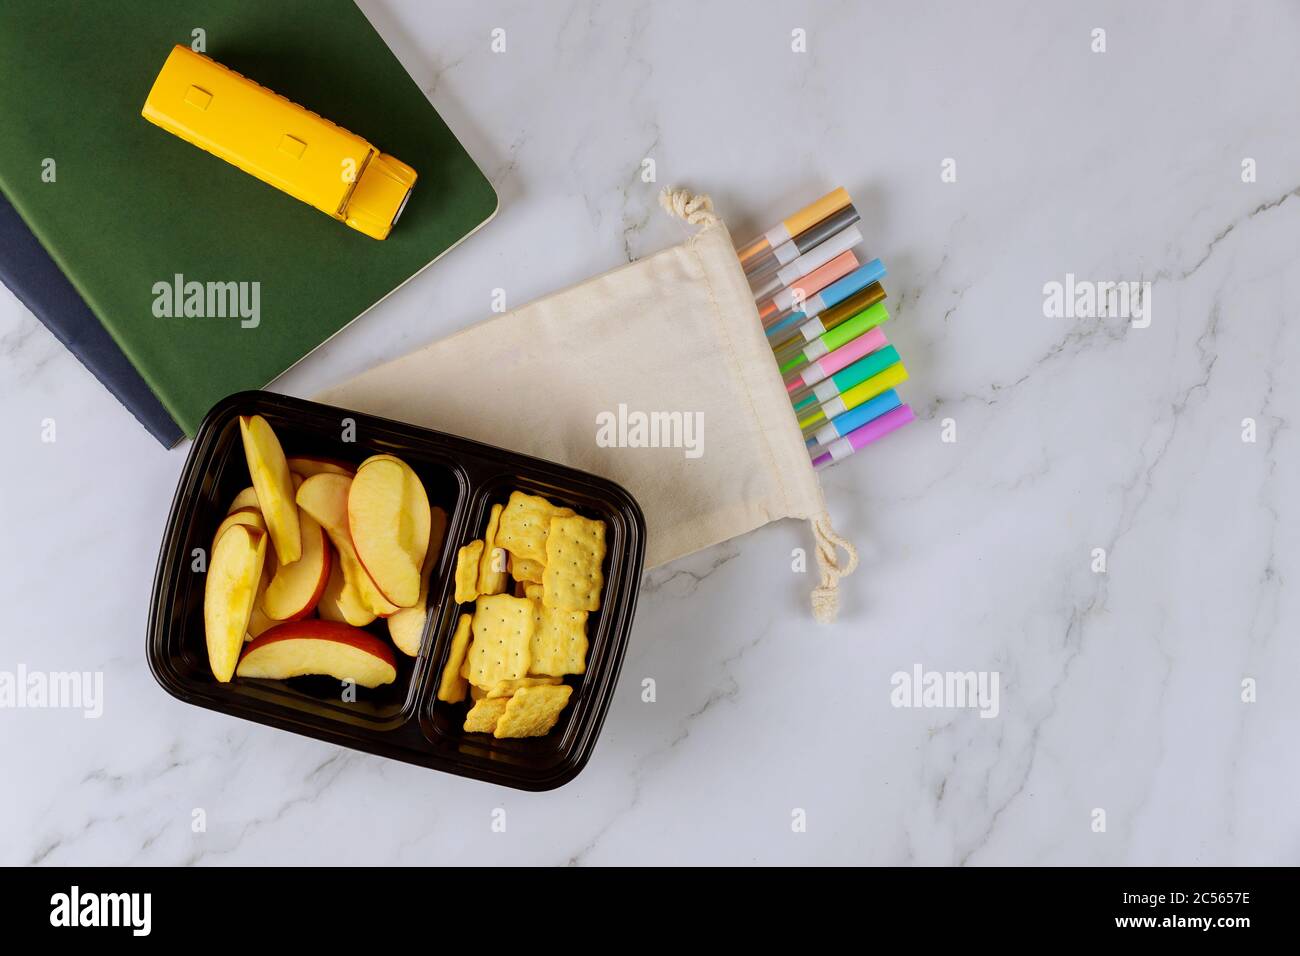 Forniture scolastiche e pranzo al sacco con mele a fette, cracker. Concetto di ritorno a scuola. Foto Stock